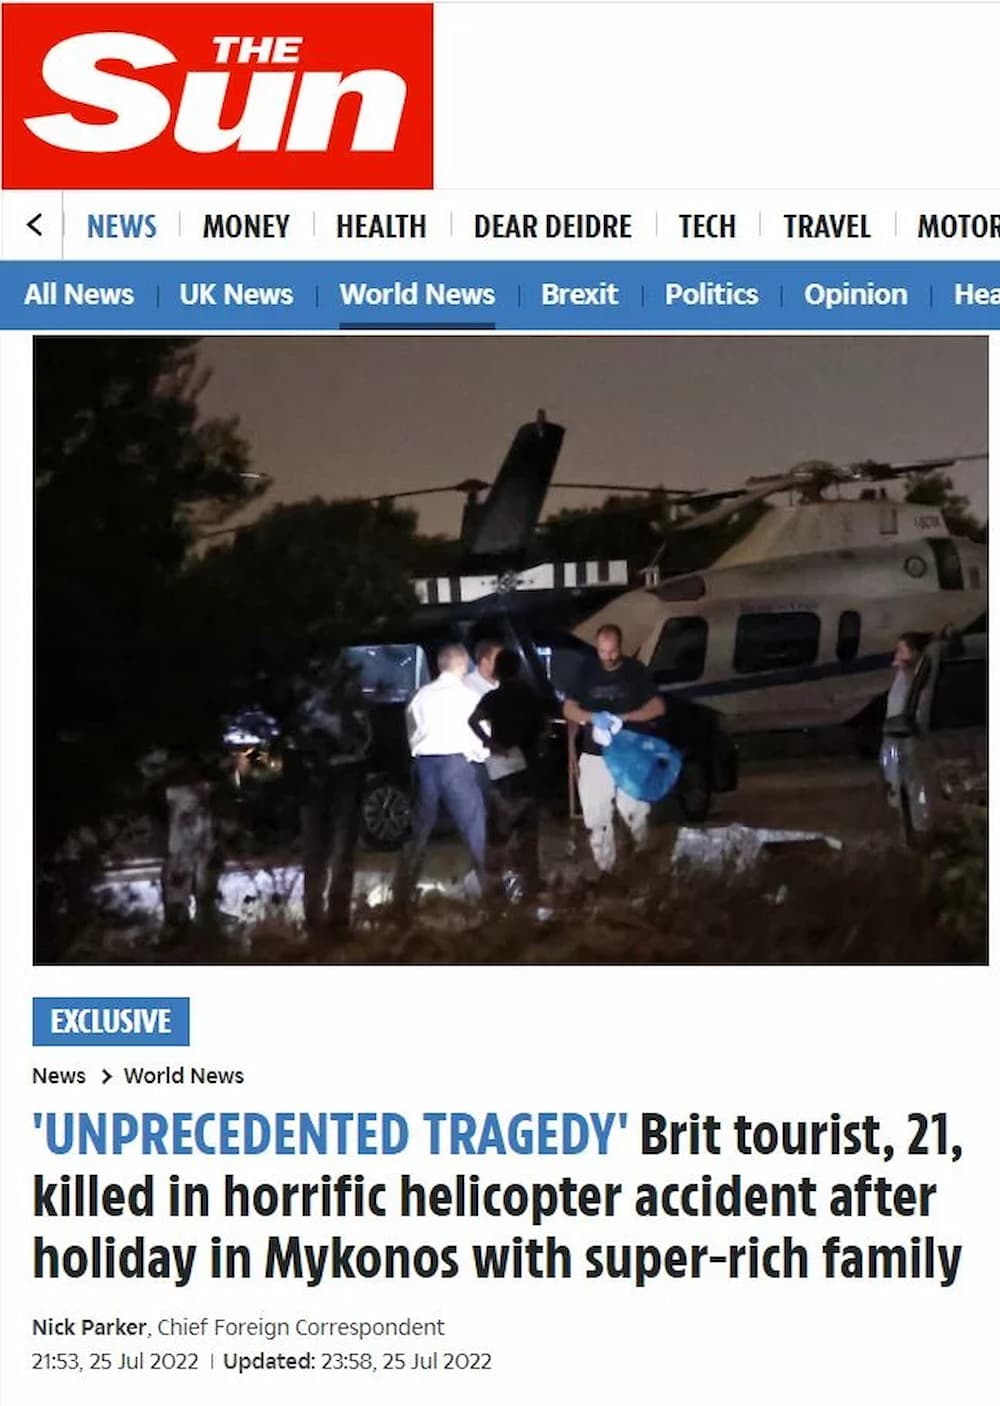 Τραγωδία με το ελικόπτερο στα Σπάτα: Γόνος πλούσιας οικογένειας Βρετανών ο 22χρονος που σκοτώθηκε - Δεν έχει γίνει γνωστή η ταυτότητά του